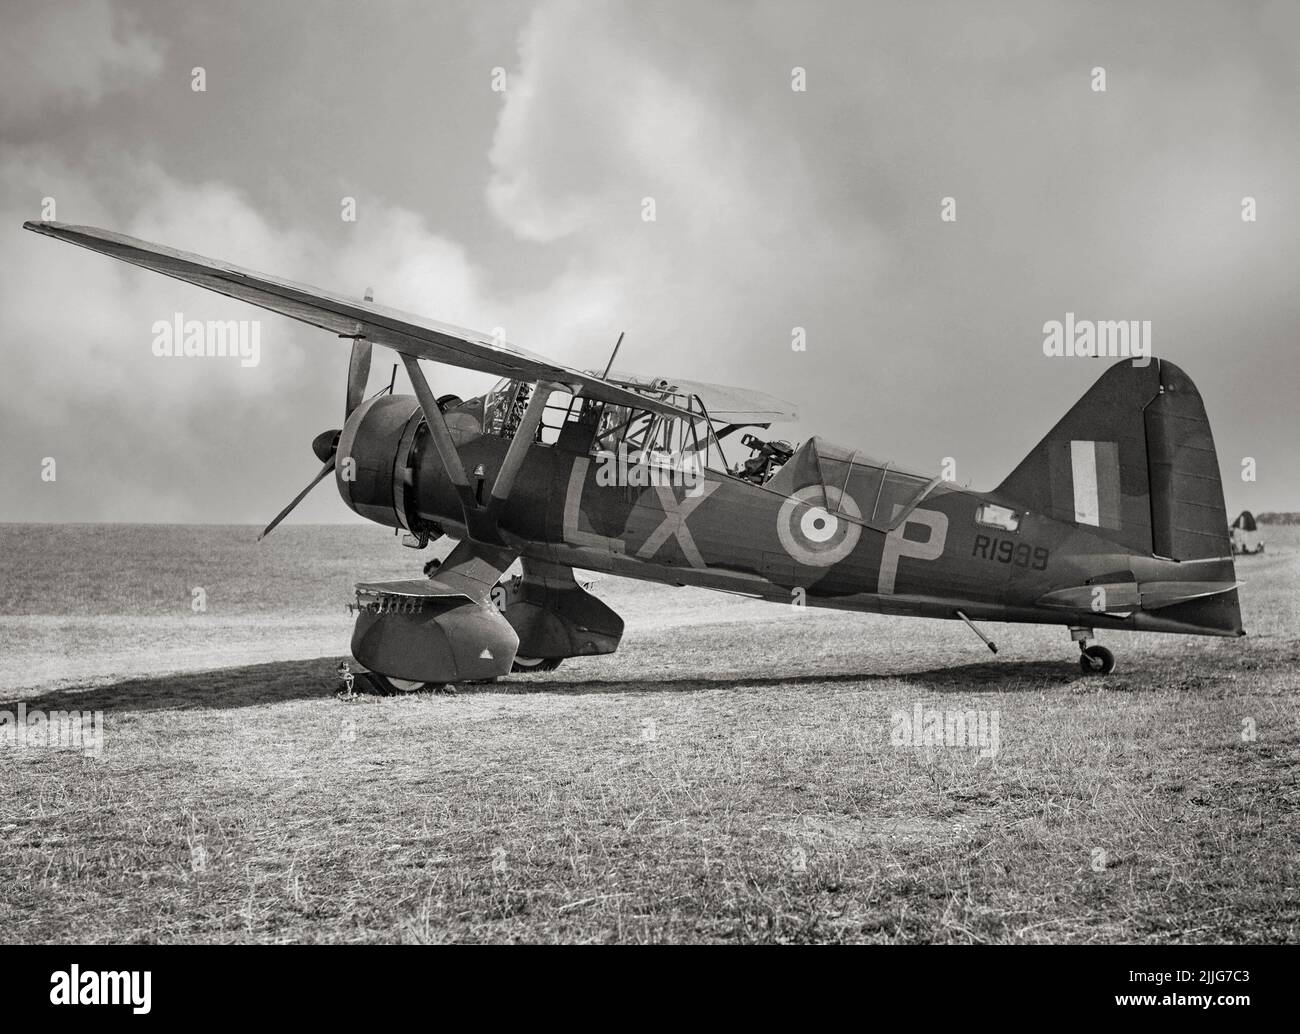 Un Lysander de Westland Mark II de l'escadron no 225 RAF, en cours d'entretien à Tilshead, Wiltshire. Notez la mitrailleuse Lewis Mark III sur son support Fairey dans le cockpit arrière. L'avion était un avion de coopération et de liaison de l'armée britannique utilisé immédiatement avant et pendant la Seconde Guerre mondiale. Après être devenu obsolète dans le rôle de coopération de l'armée, les performances de l'avion sur le court-terrain ont permis aux missions clandestines utilisant de petites pistes d'atterrissage improvisées derrière les lignes ennemies de placer ou de récupérer des agents, en particulier dans la France occupée. Banque D'Images